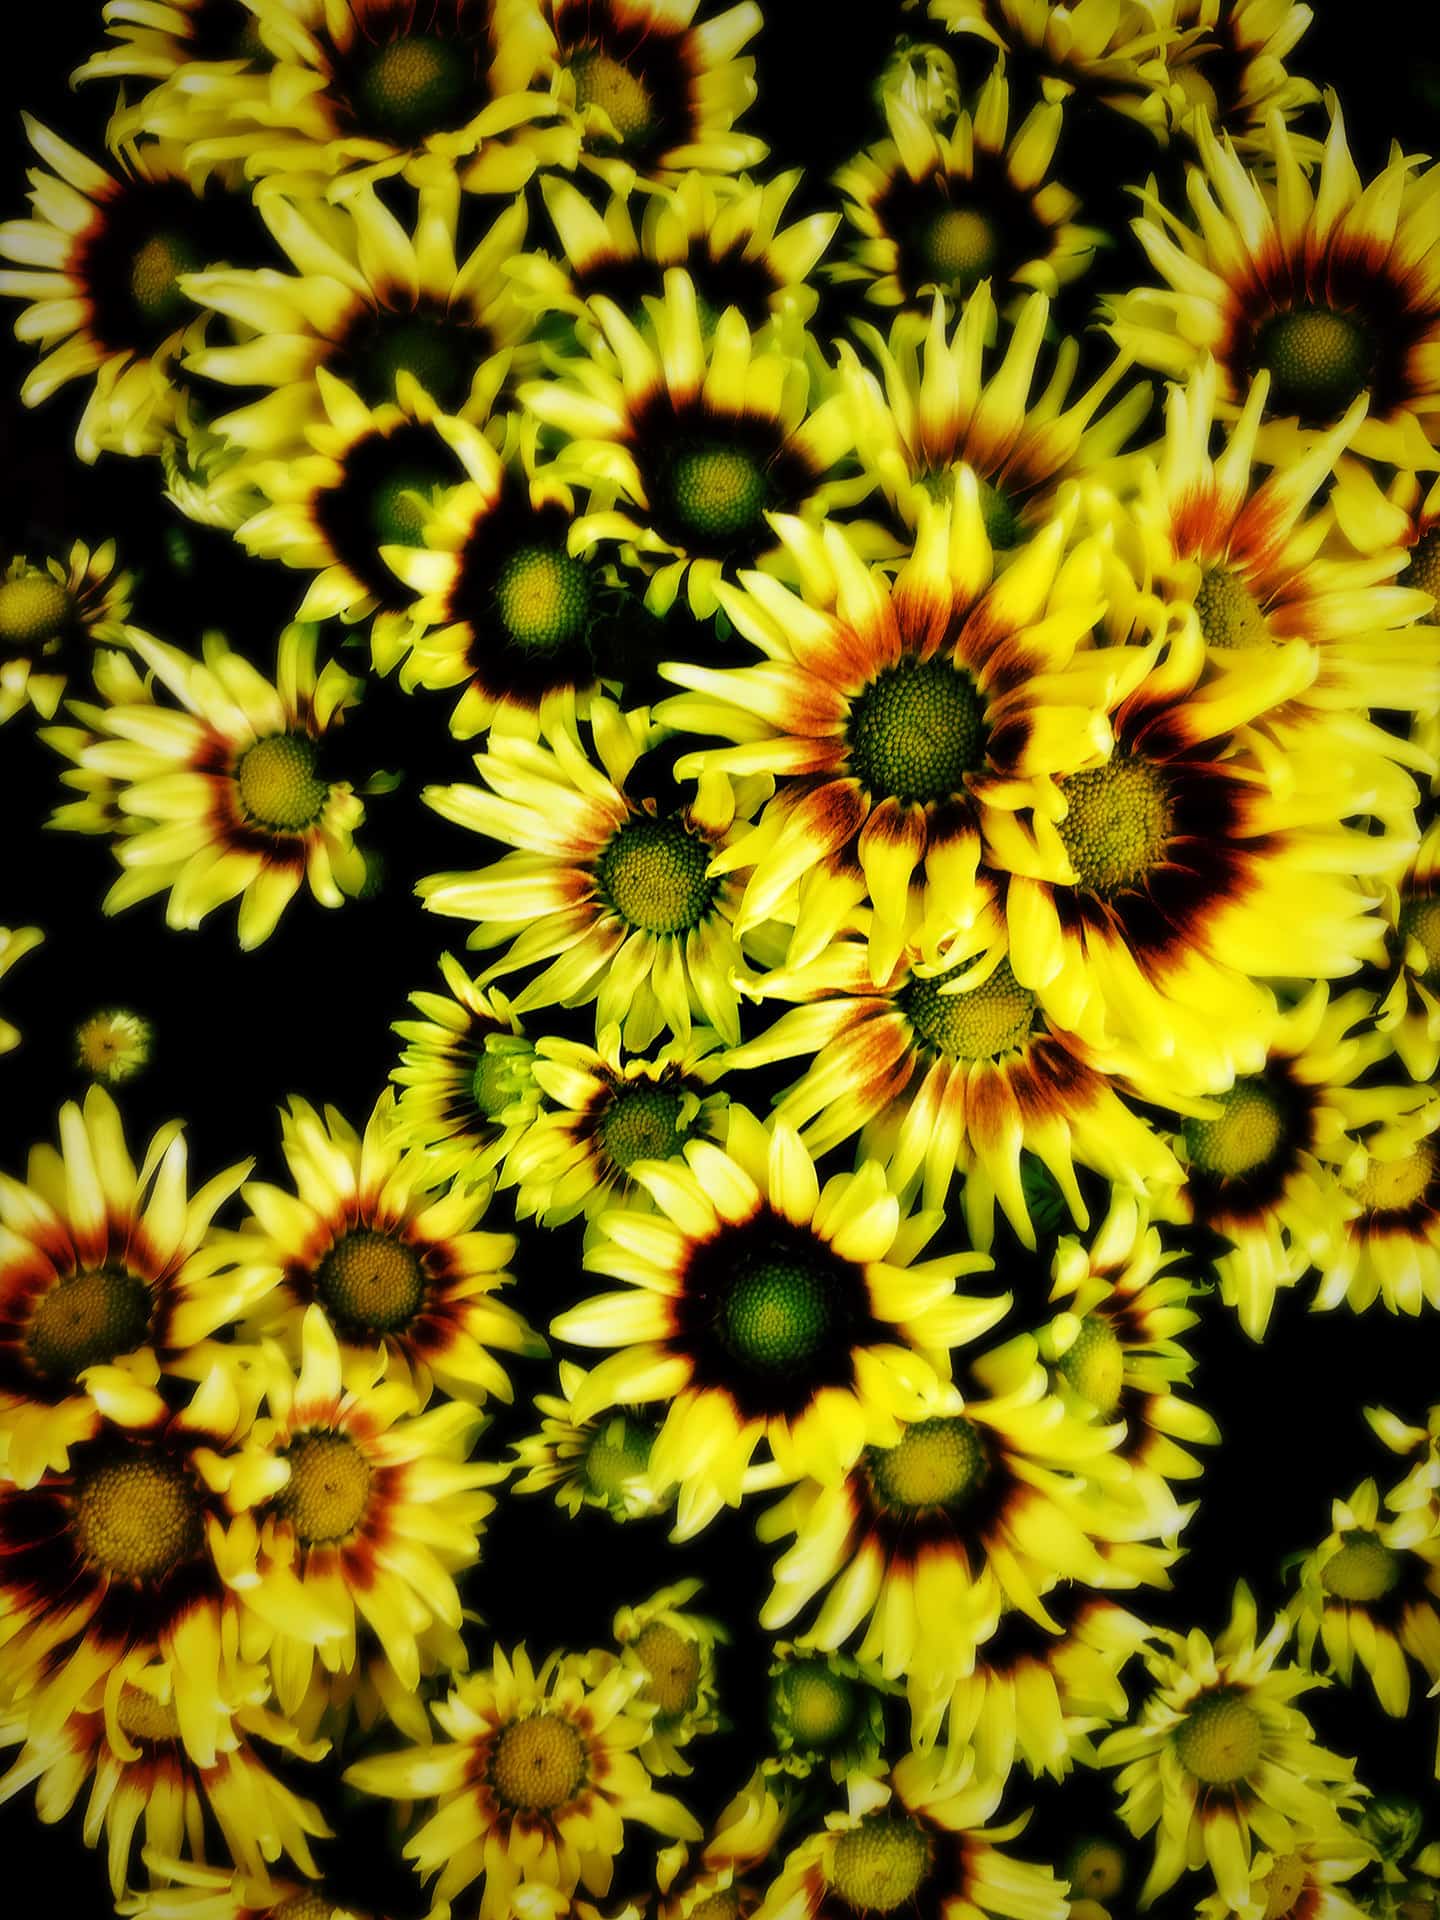 artnorama - Summer Chrysanthemum